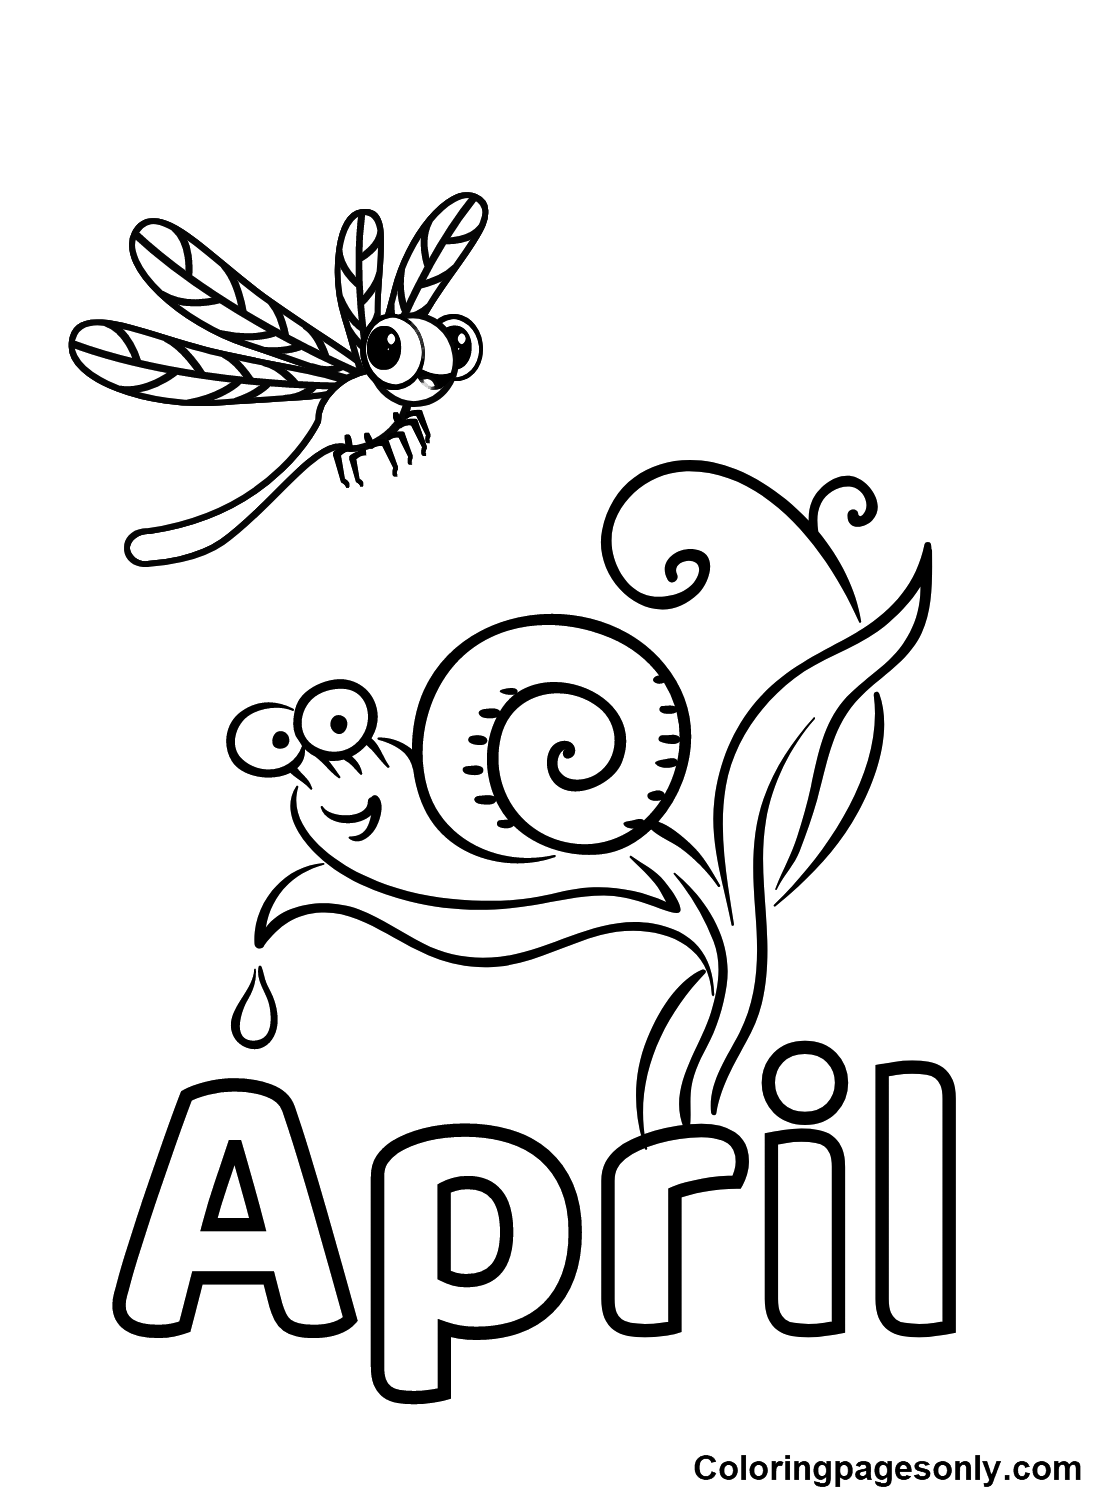 April calendar image coloring pages